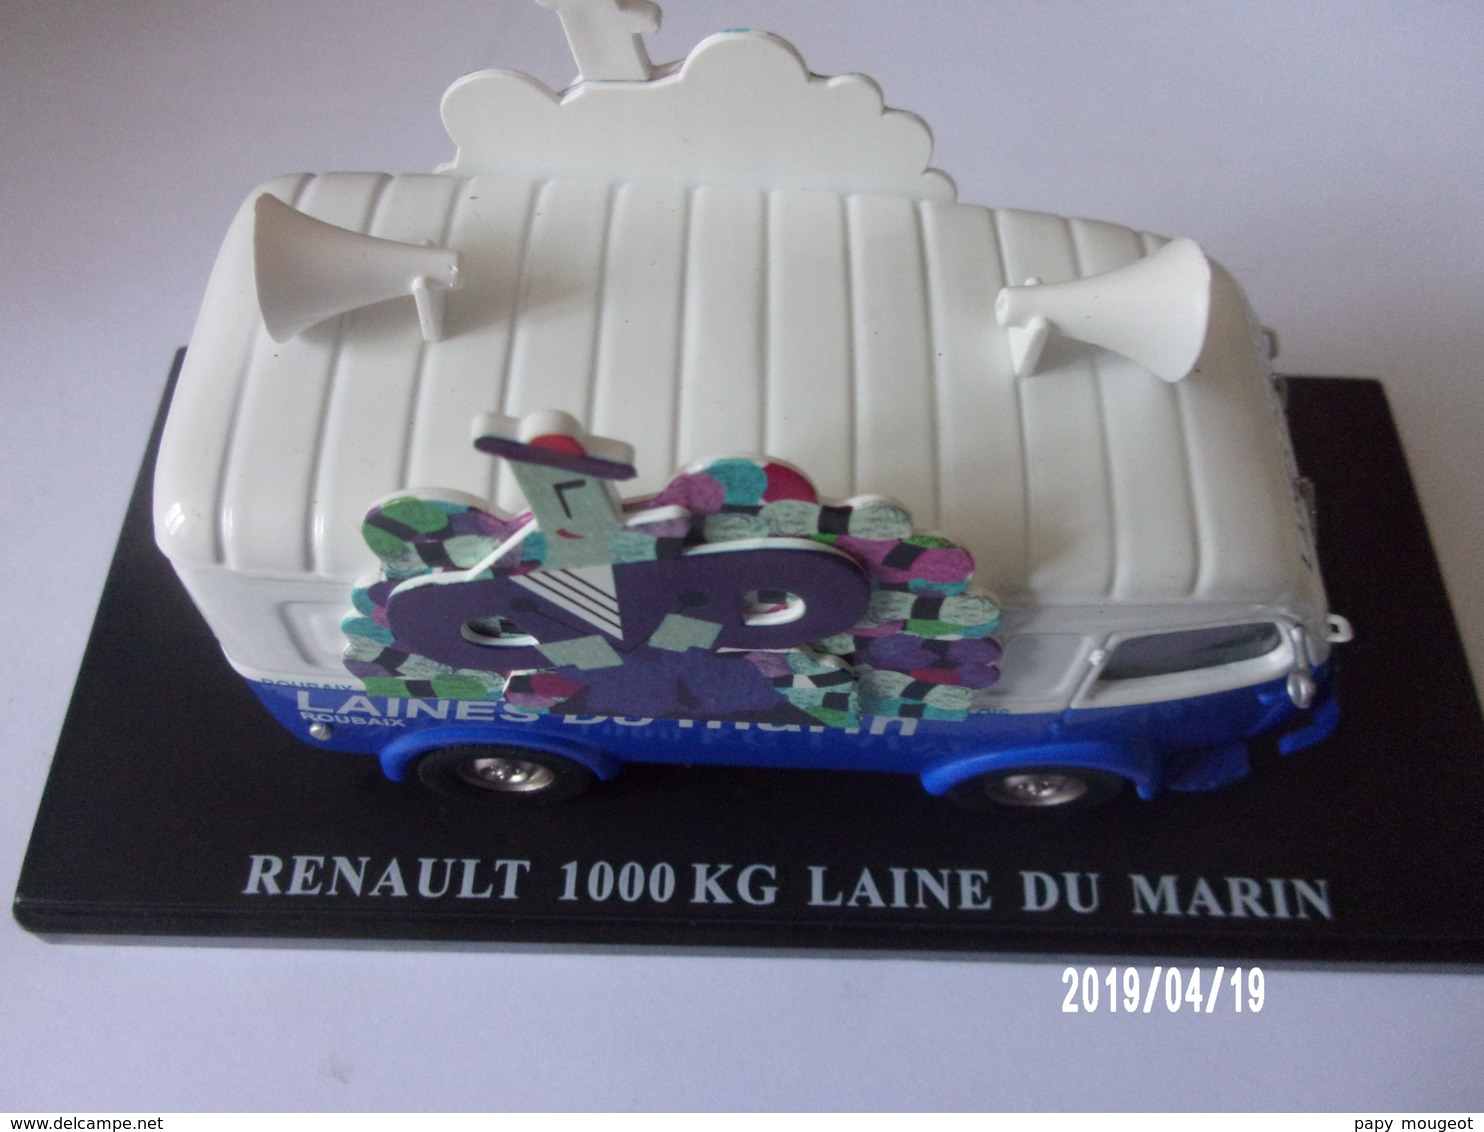 RENAULT 1000 KG LAINES DU MARIN - Publicitaires - Toutes Marques